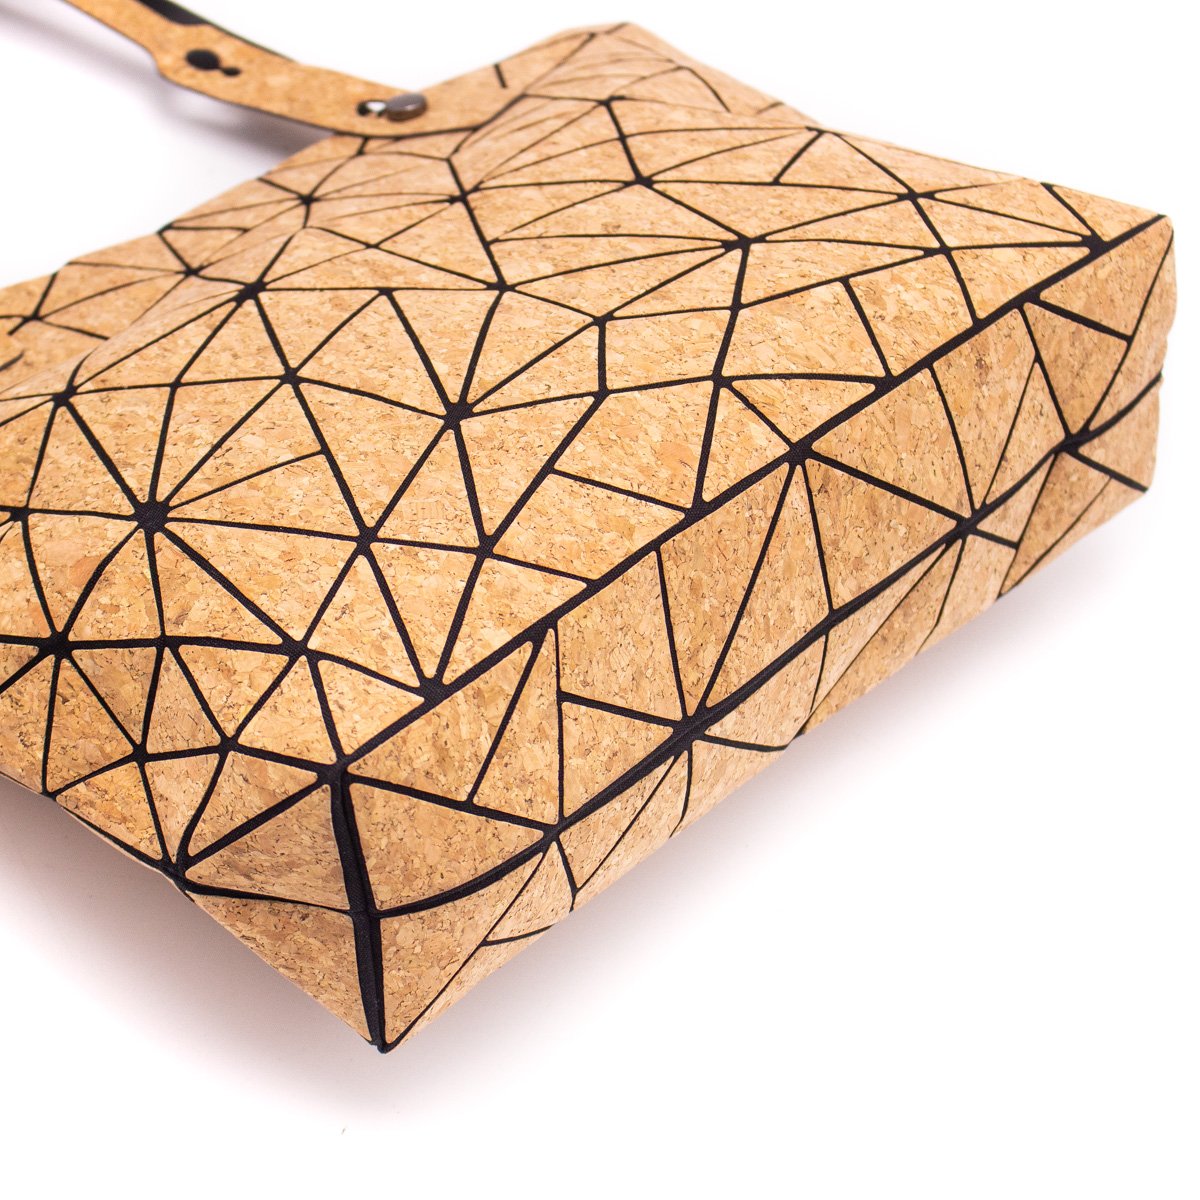 Geometric Tote Bag Handbag Handle Shopping Bag | THE CORK COLLECTION